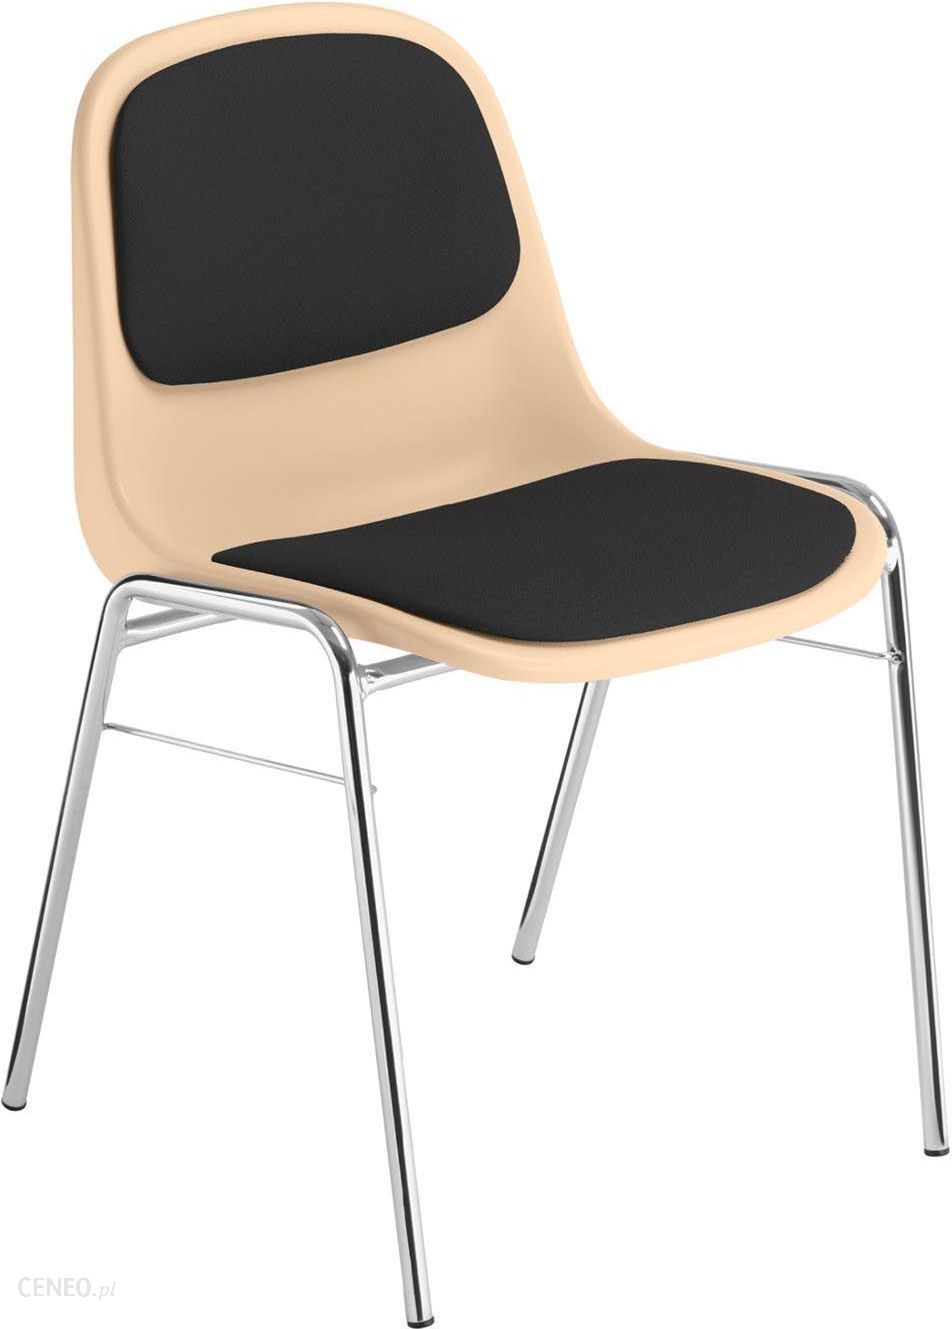 Seiko Pritt Nowy Styl Krzesło Konferencyjne Beta Plus 4L - Ceny i opinie -  